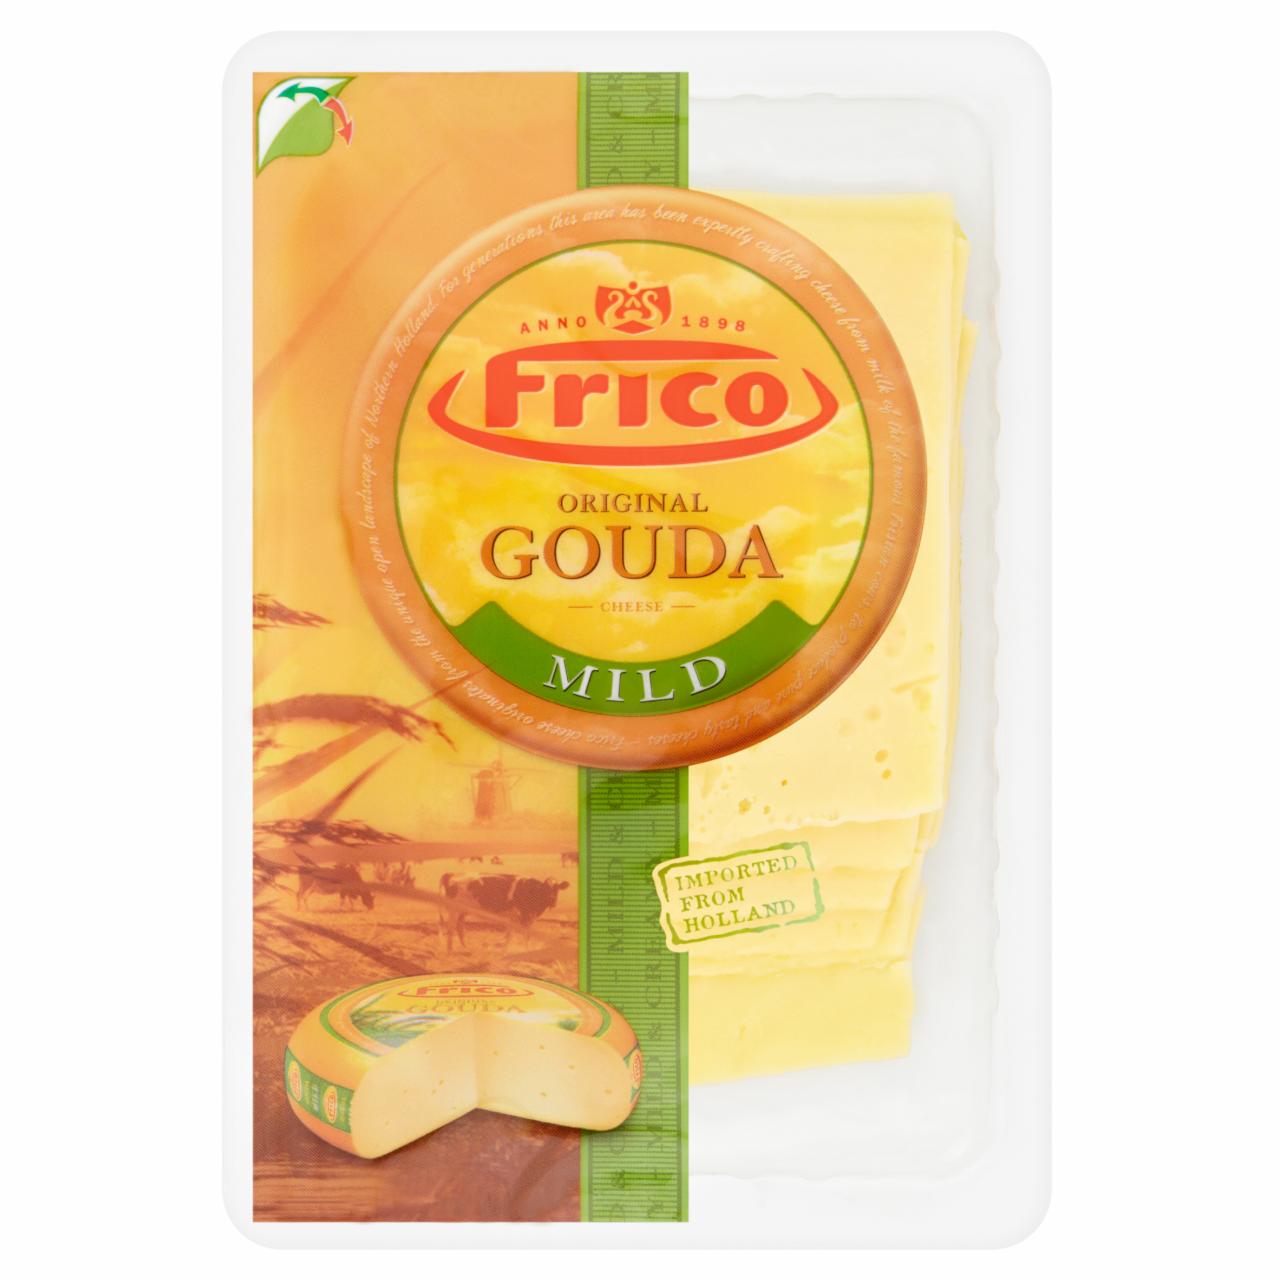 Képek - Frico Gouda Mild félkemény, zsíros szeletelt sajt 150 g